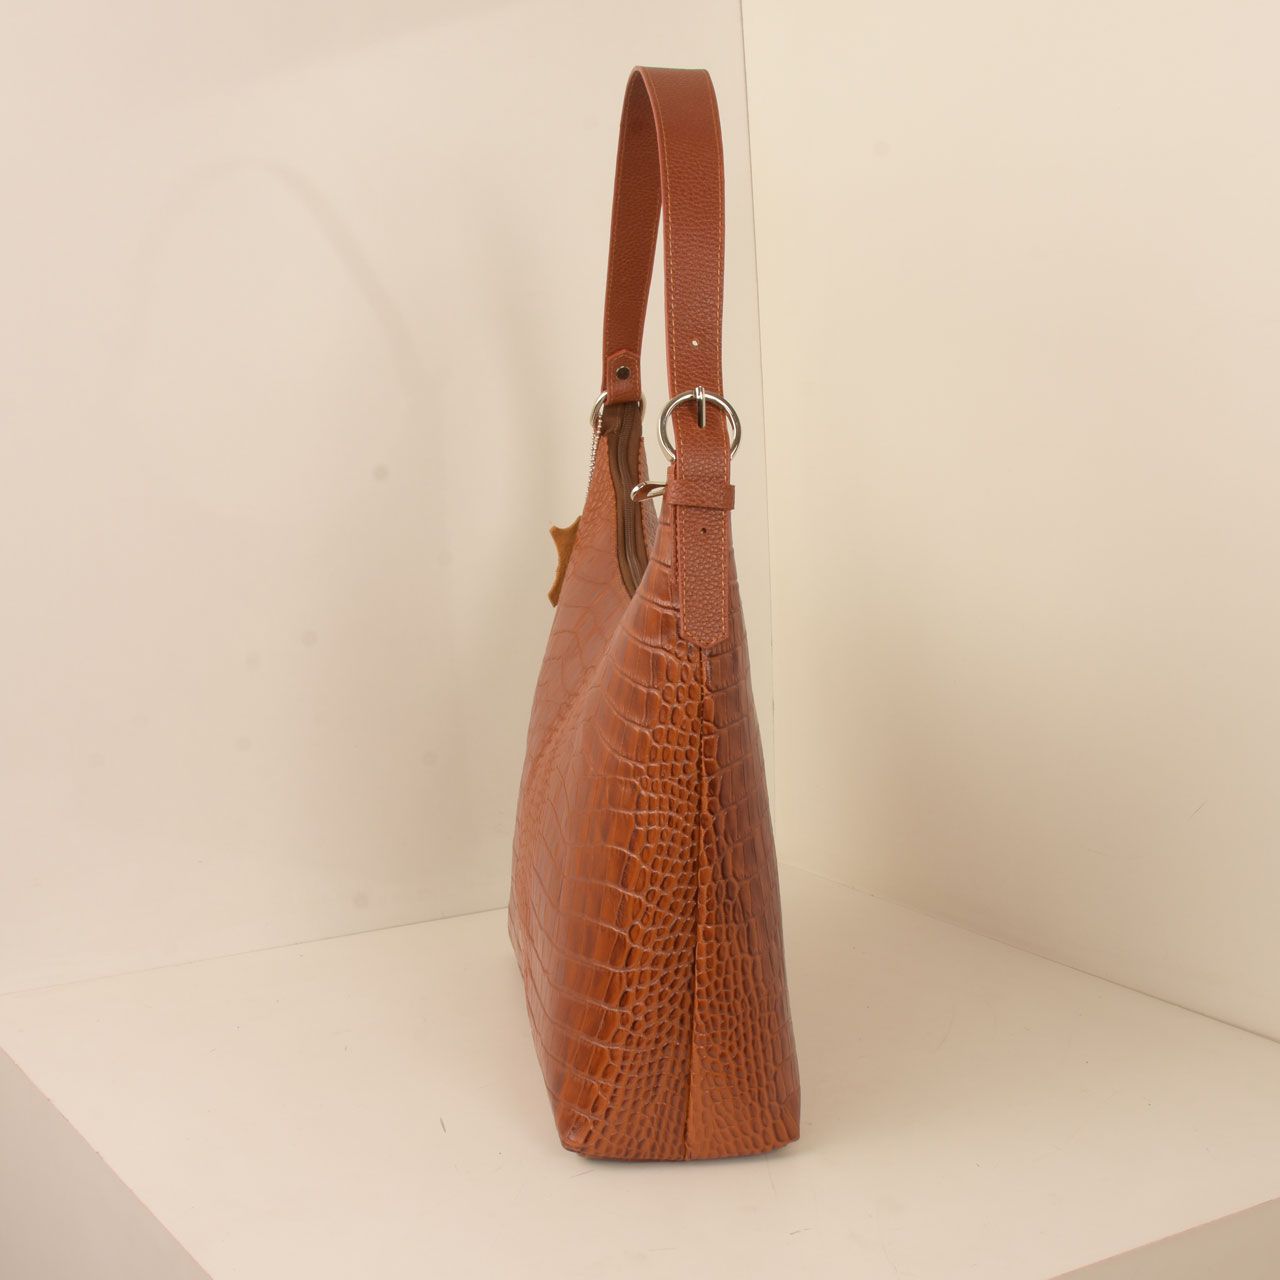  کیف دوشی زنانه پارینه چرم مدل V203-1 -  - 3